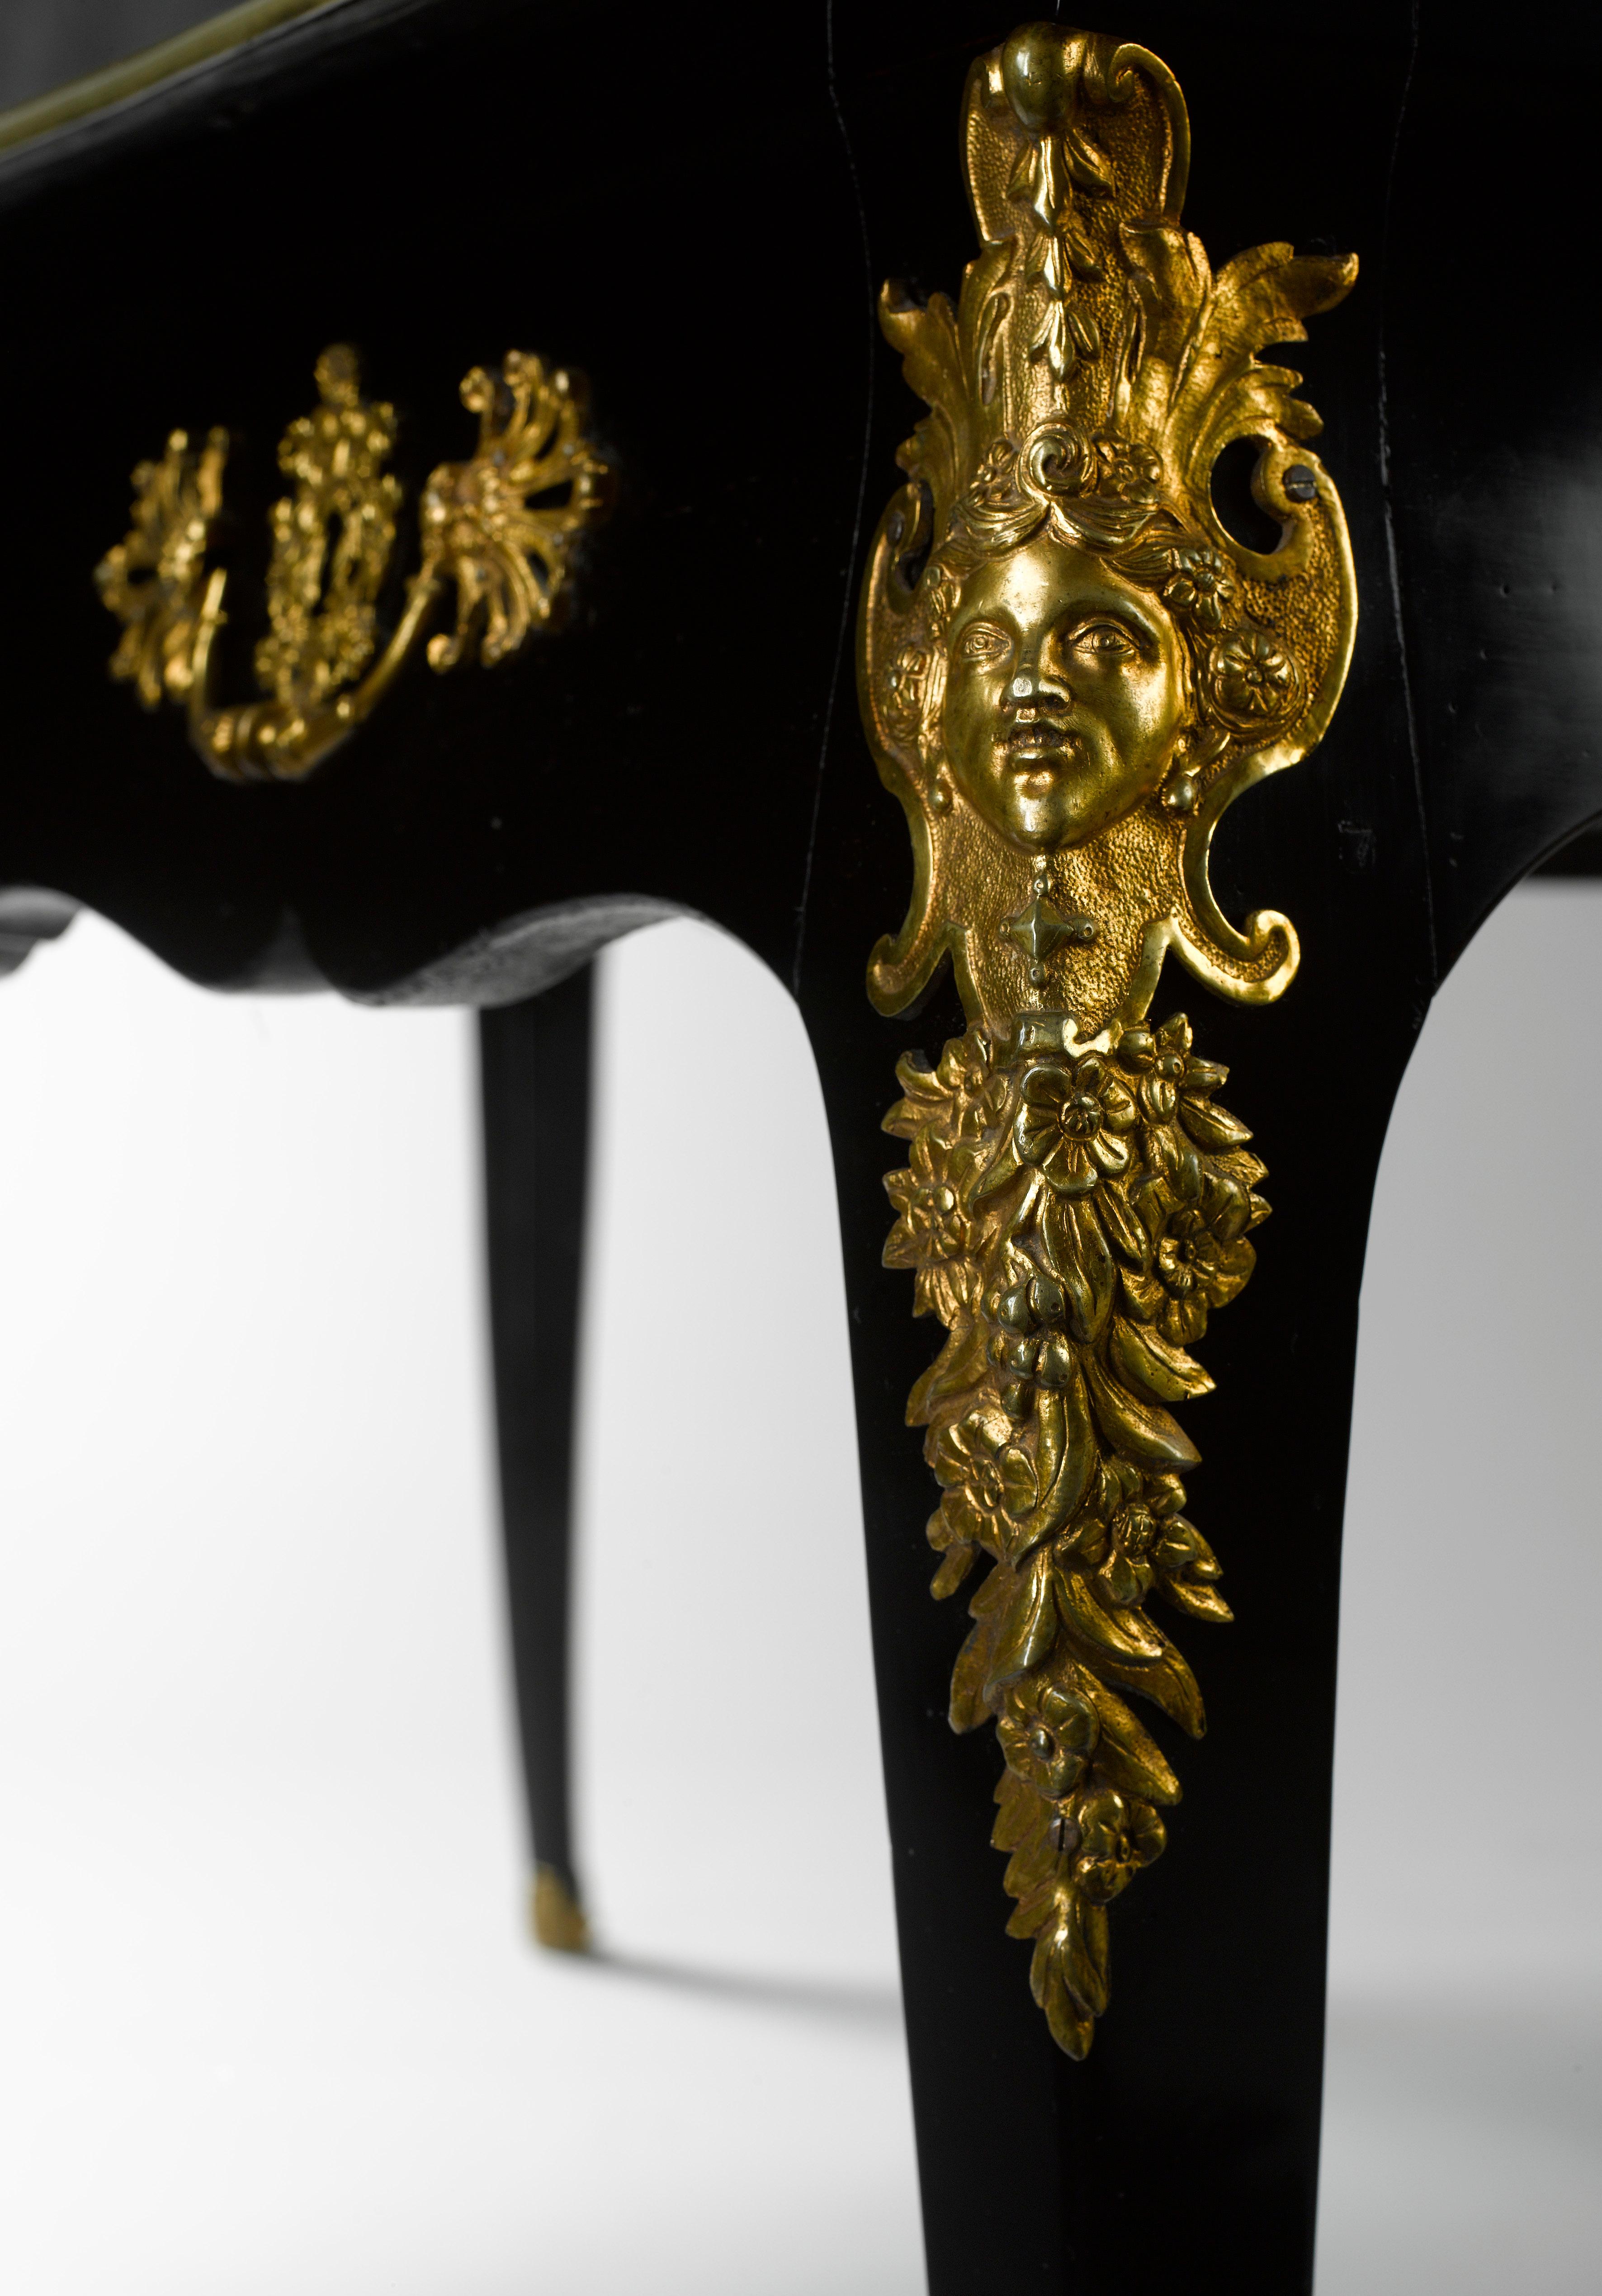 Ein imposanter ebonisierter Louis XV-Schreibtisch mit fein ziselierten, vergoldeten Bronzebeschlägen. Die gestufte geformte rechteckige Oberseite mit dem ursprünglichen vergoldeten Leder über drei Fries Schubladen mit aufwendigen Ormolu Griffe und